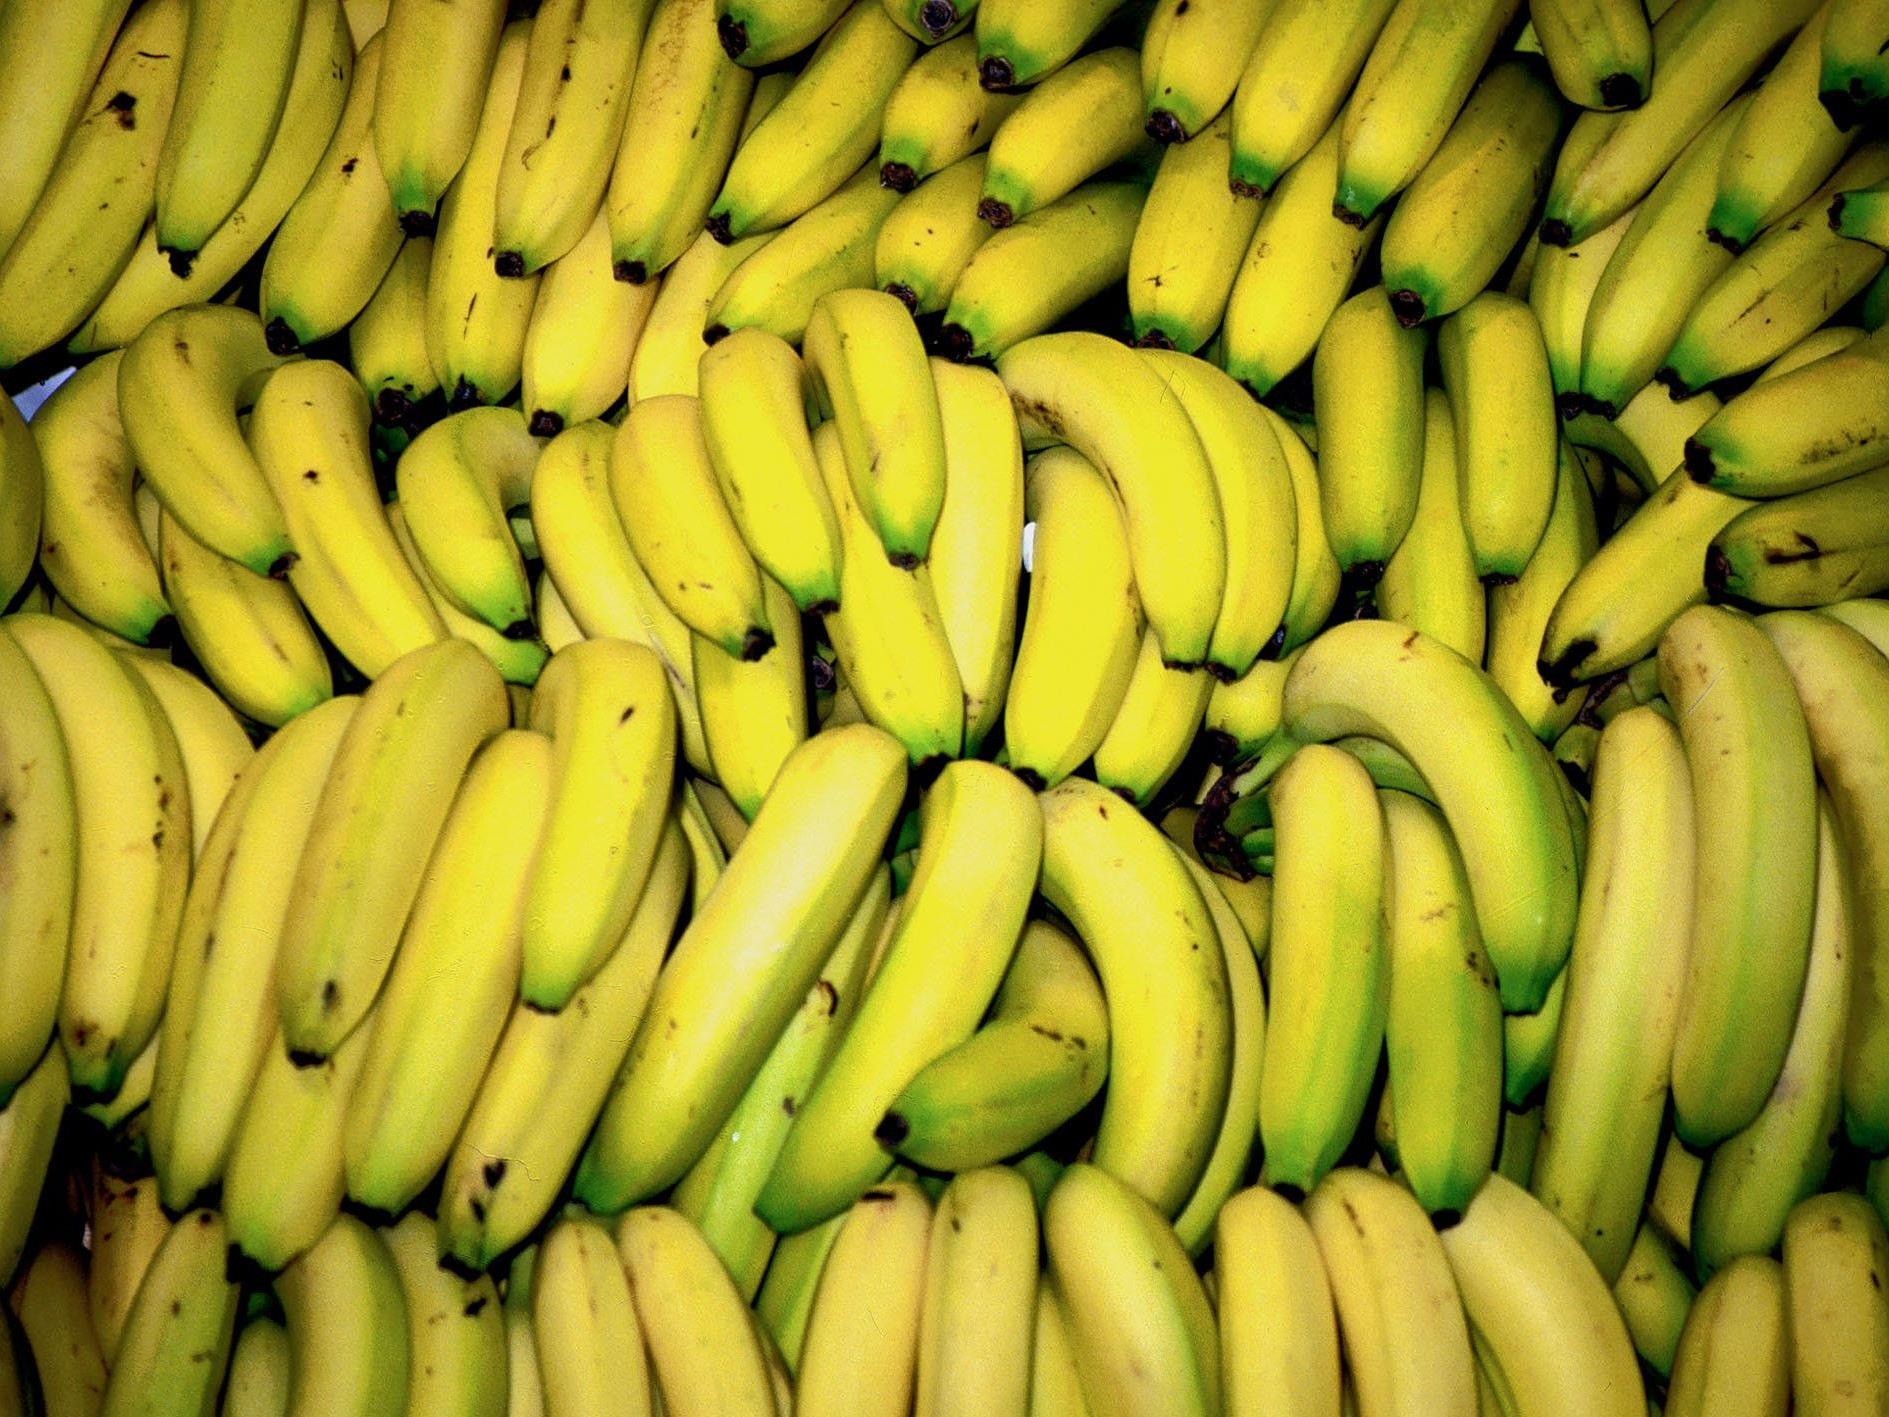 Das Kokain wurde in mehreren Bananenkisten gefunden.